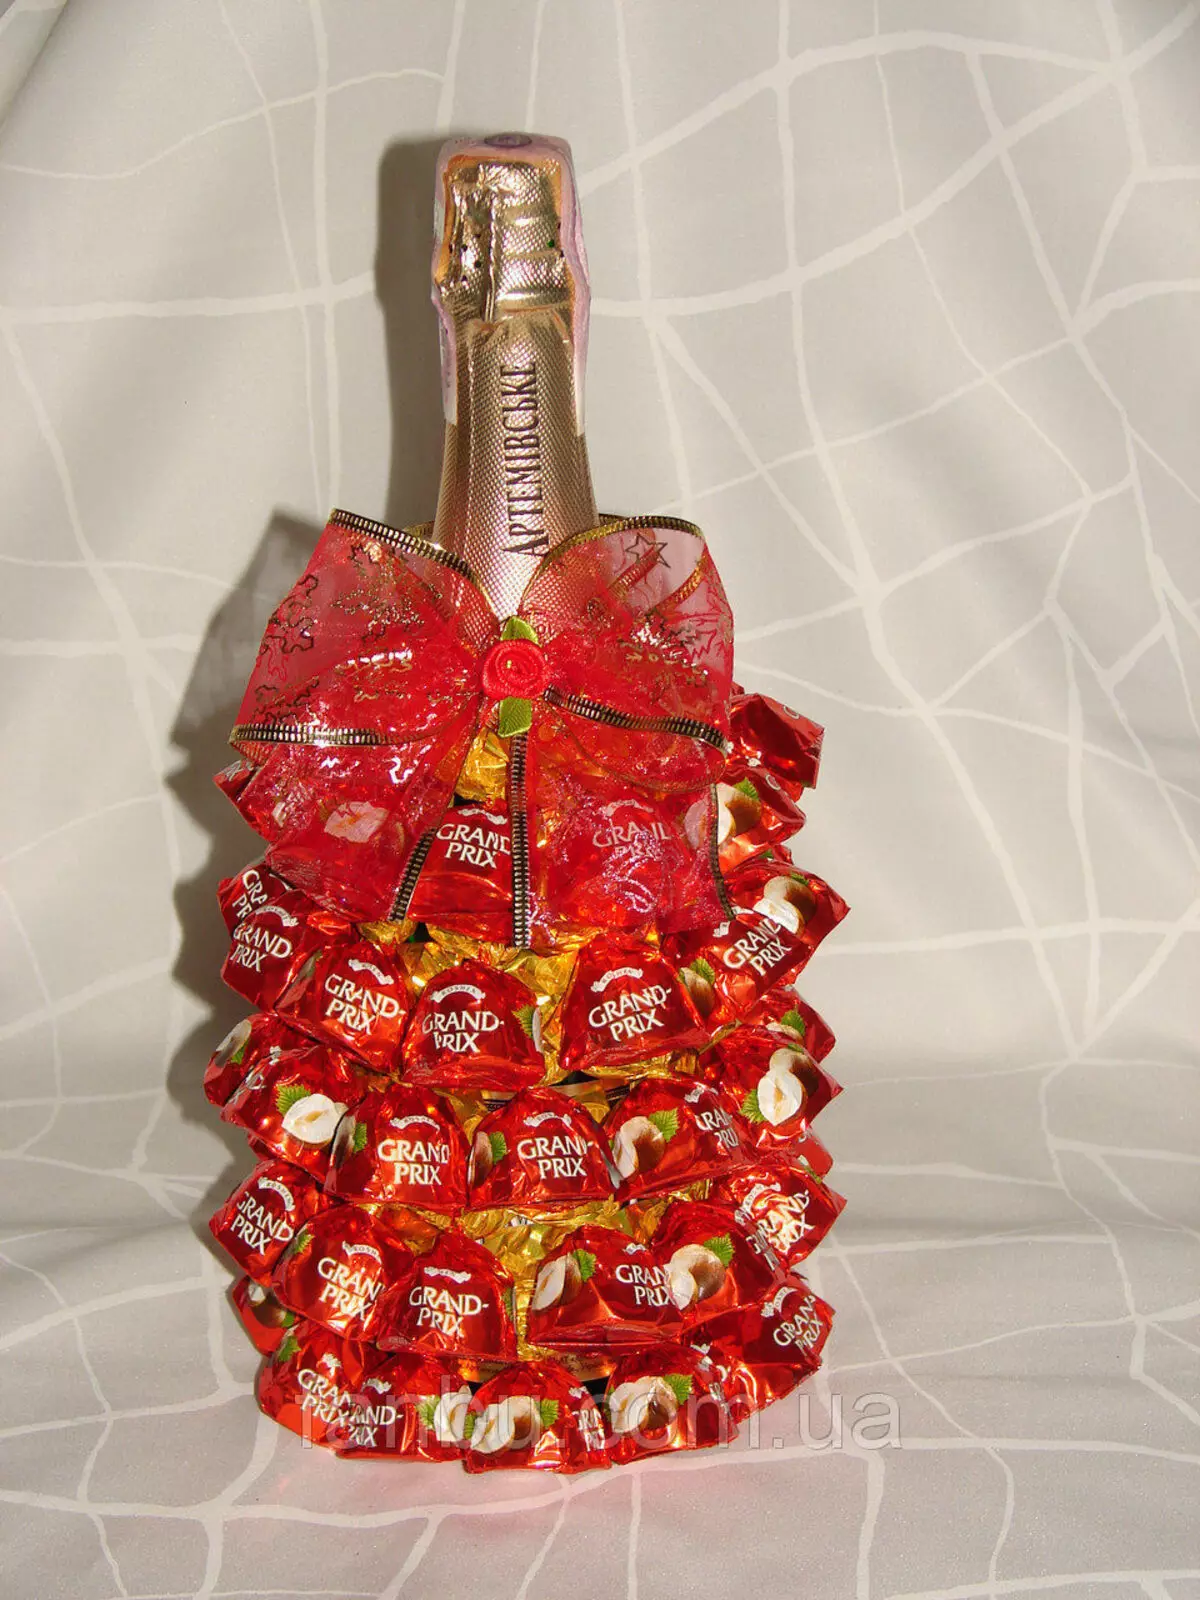 Champagne dekorerad med godis för det nya året: flaskdekoration med egna händer i form av ananas, manlig design och inredning för kvinnor 7613_10